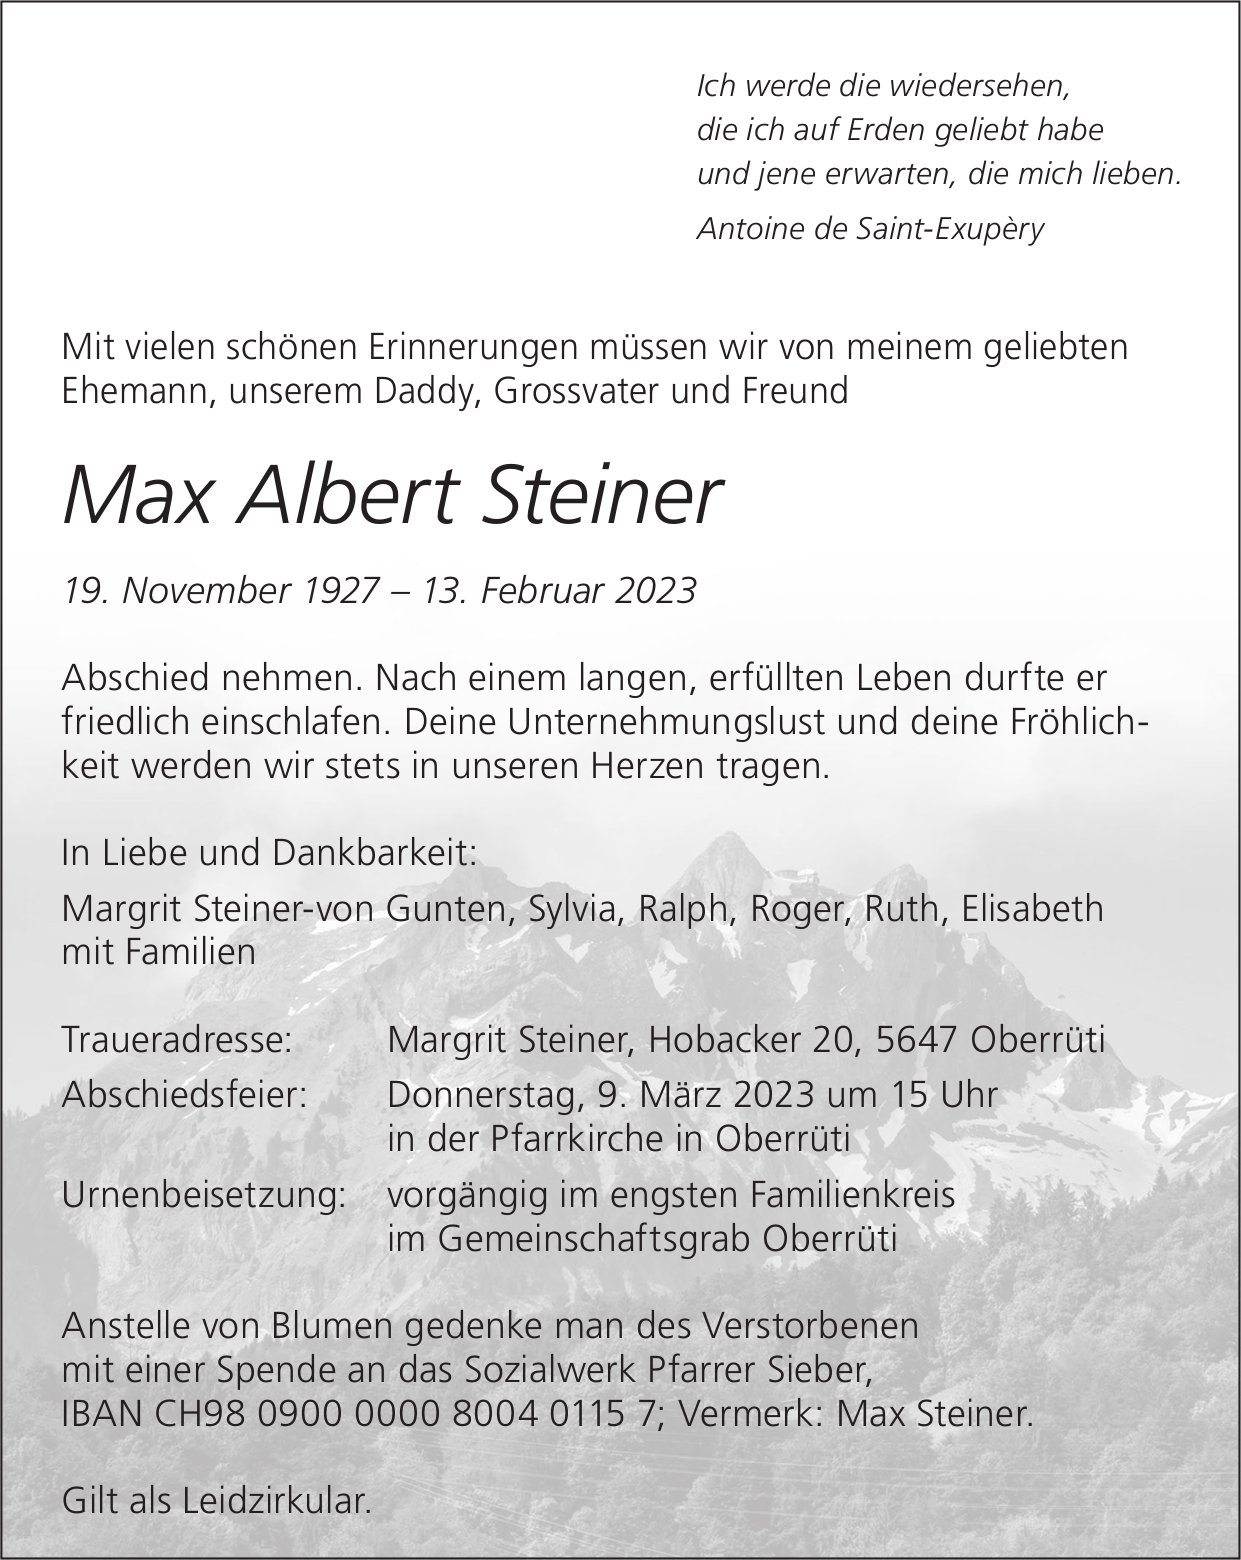 Steiner Max Albert, Februar 2023 / TA